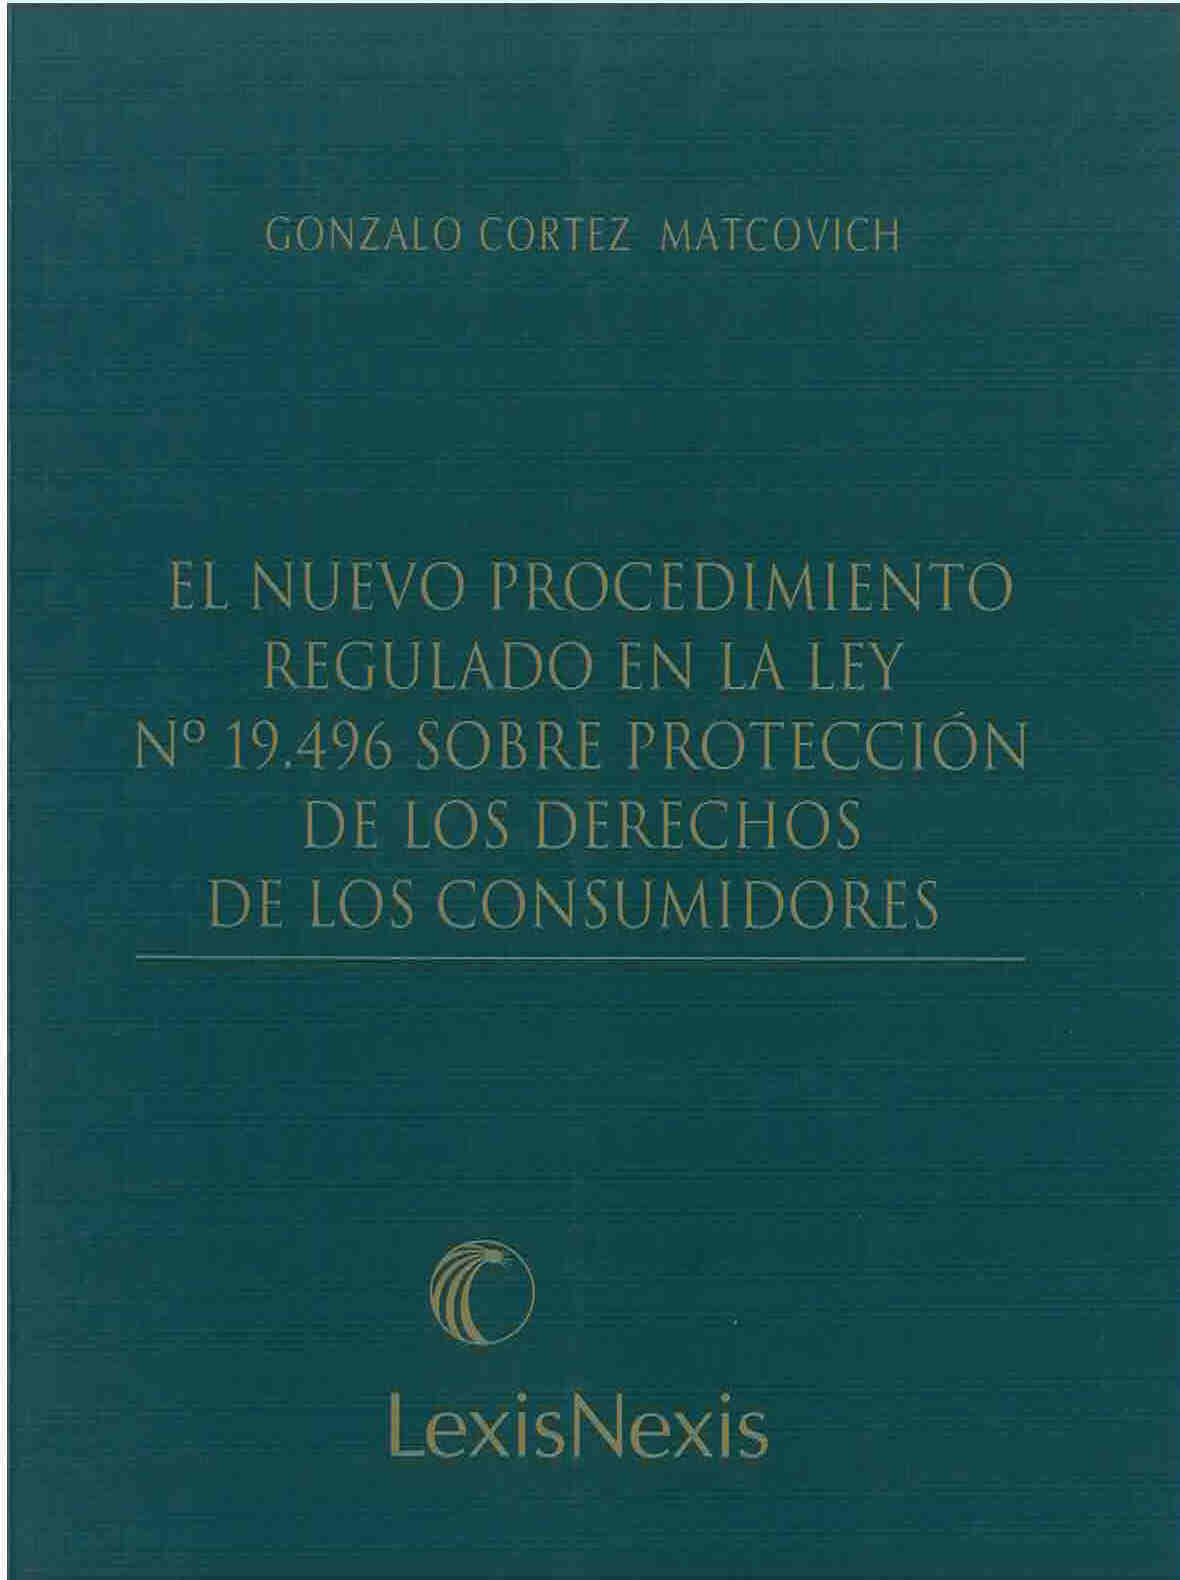 El nuevo procedimiento regulado en la ley N°19.496 sobre protección de los derechos de los consumidores